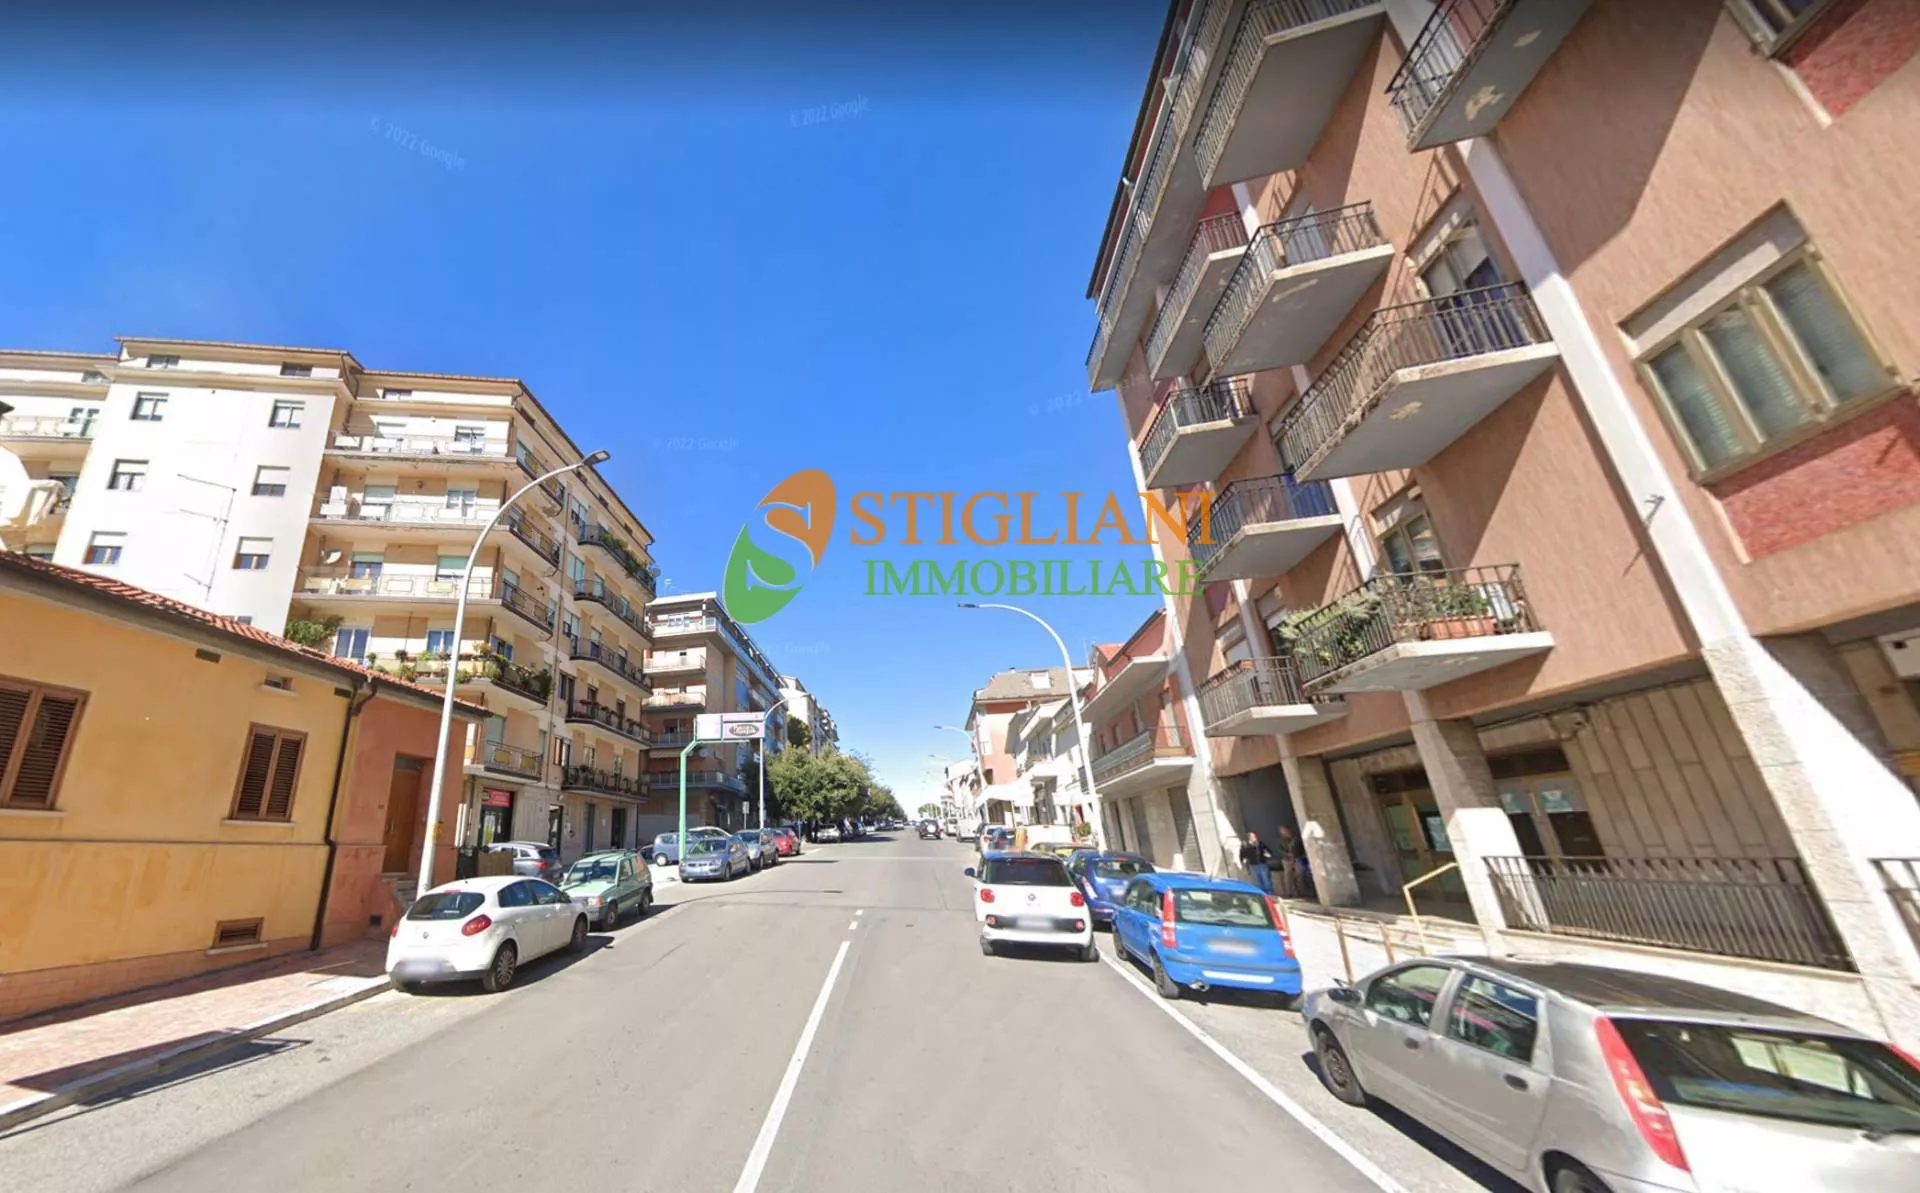 Immagine per Locale Commerciale in affitto a Campobasso zona via XXIV Maggio